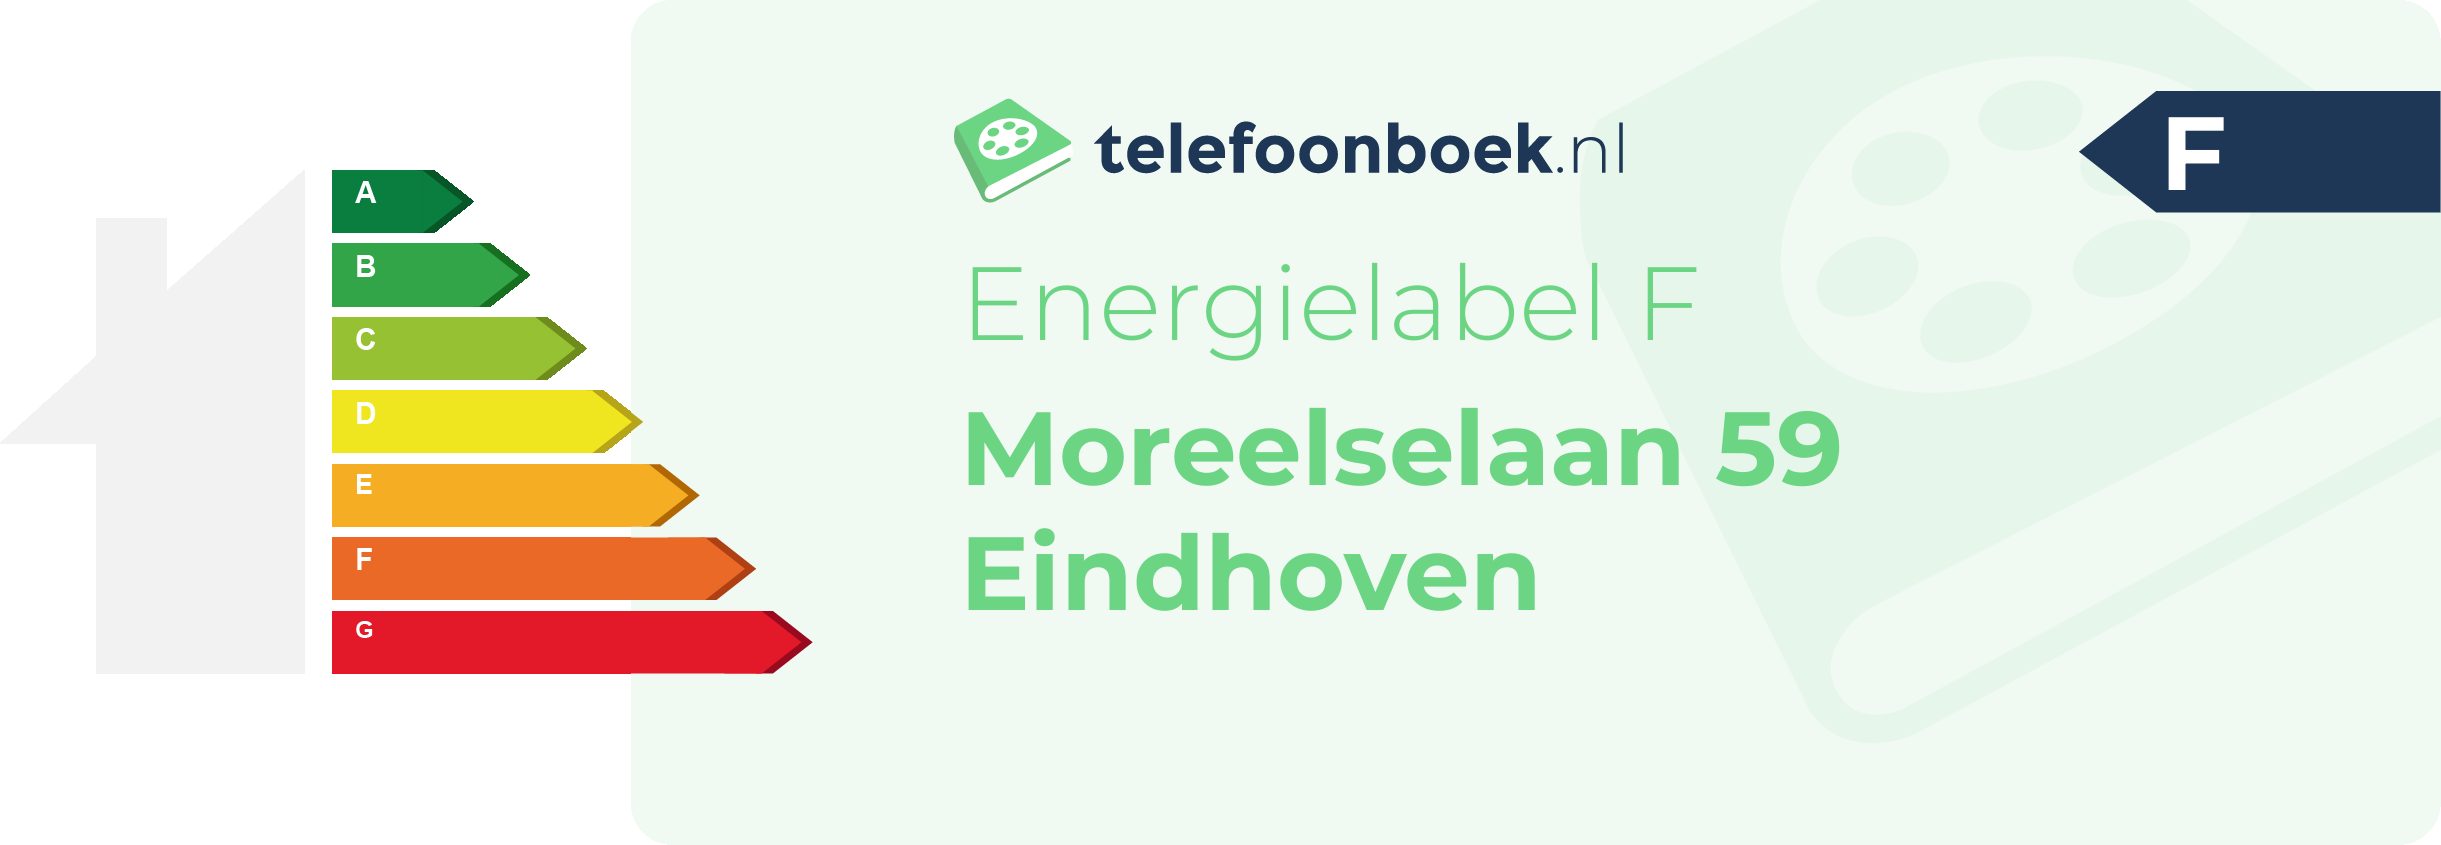 Energielabel Moreelselaan 59 Eindhoven